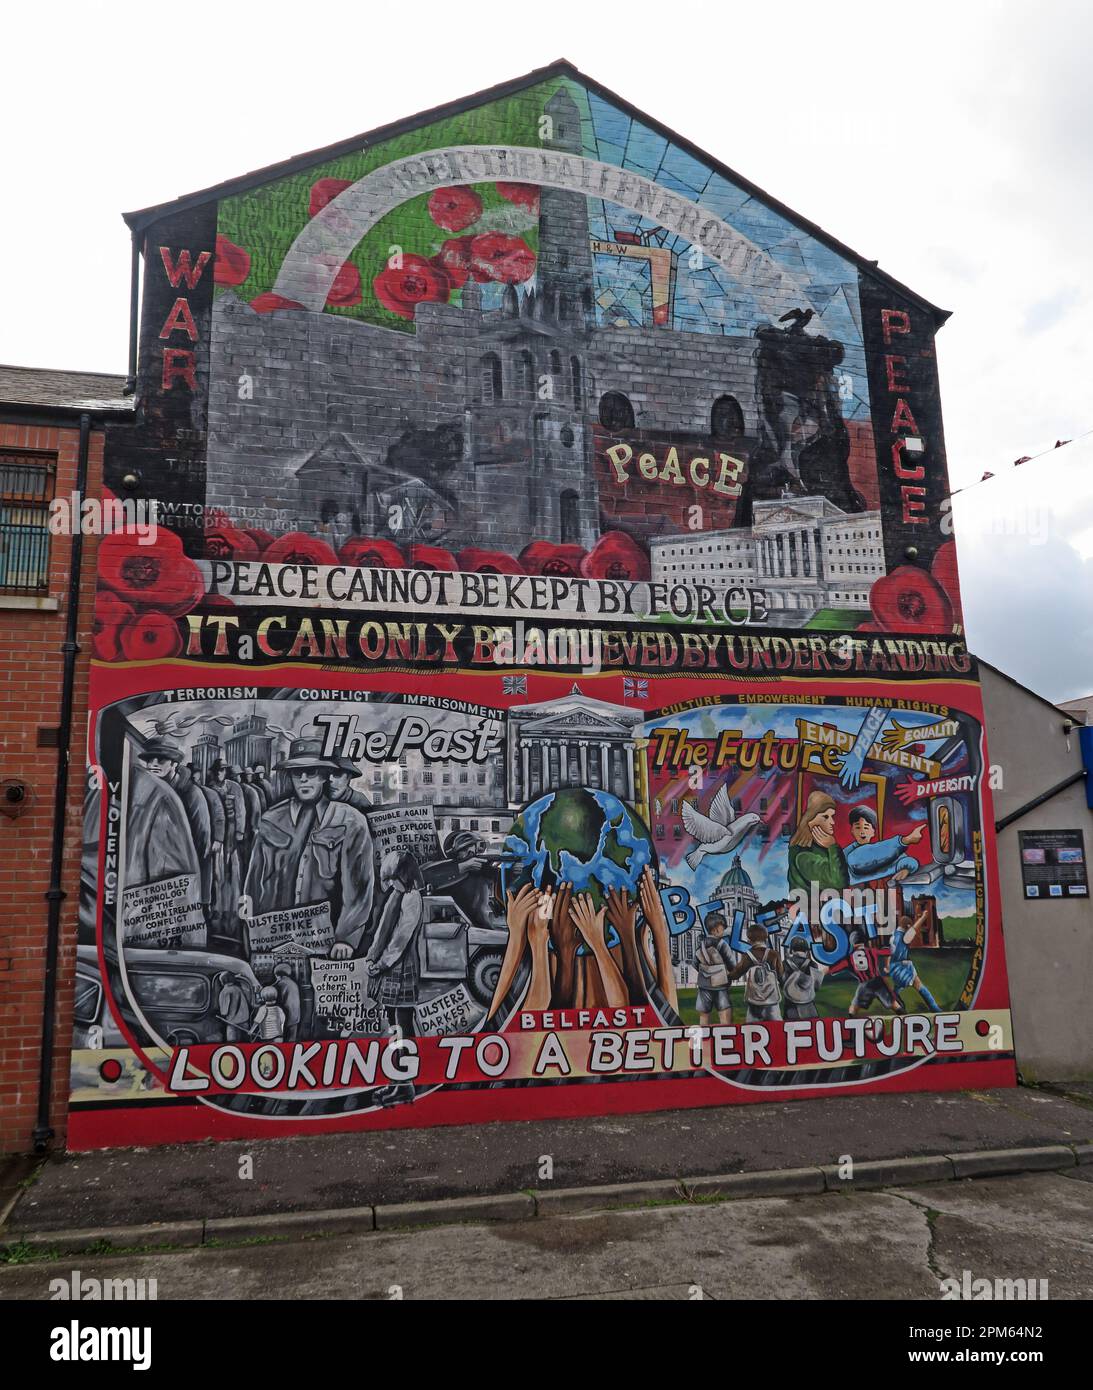 Community mural - Frieden kann nicht mit Gewalt erhalten werden, er kann nur durch Verständigung erreicht werden - Belfast blickt auf eine bessere Zukunft Stockfoto